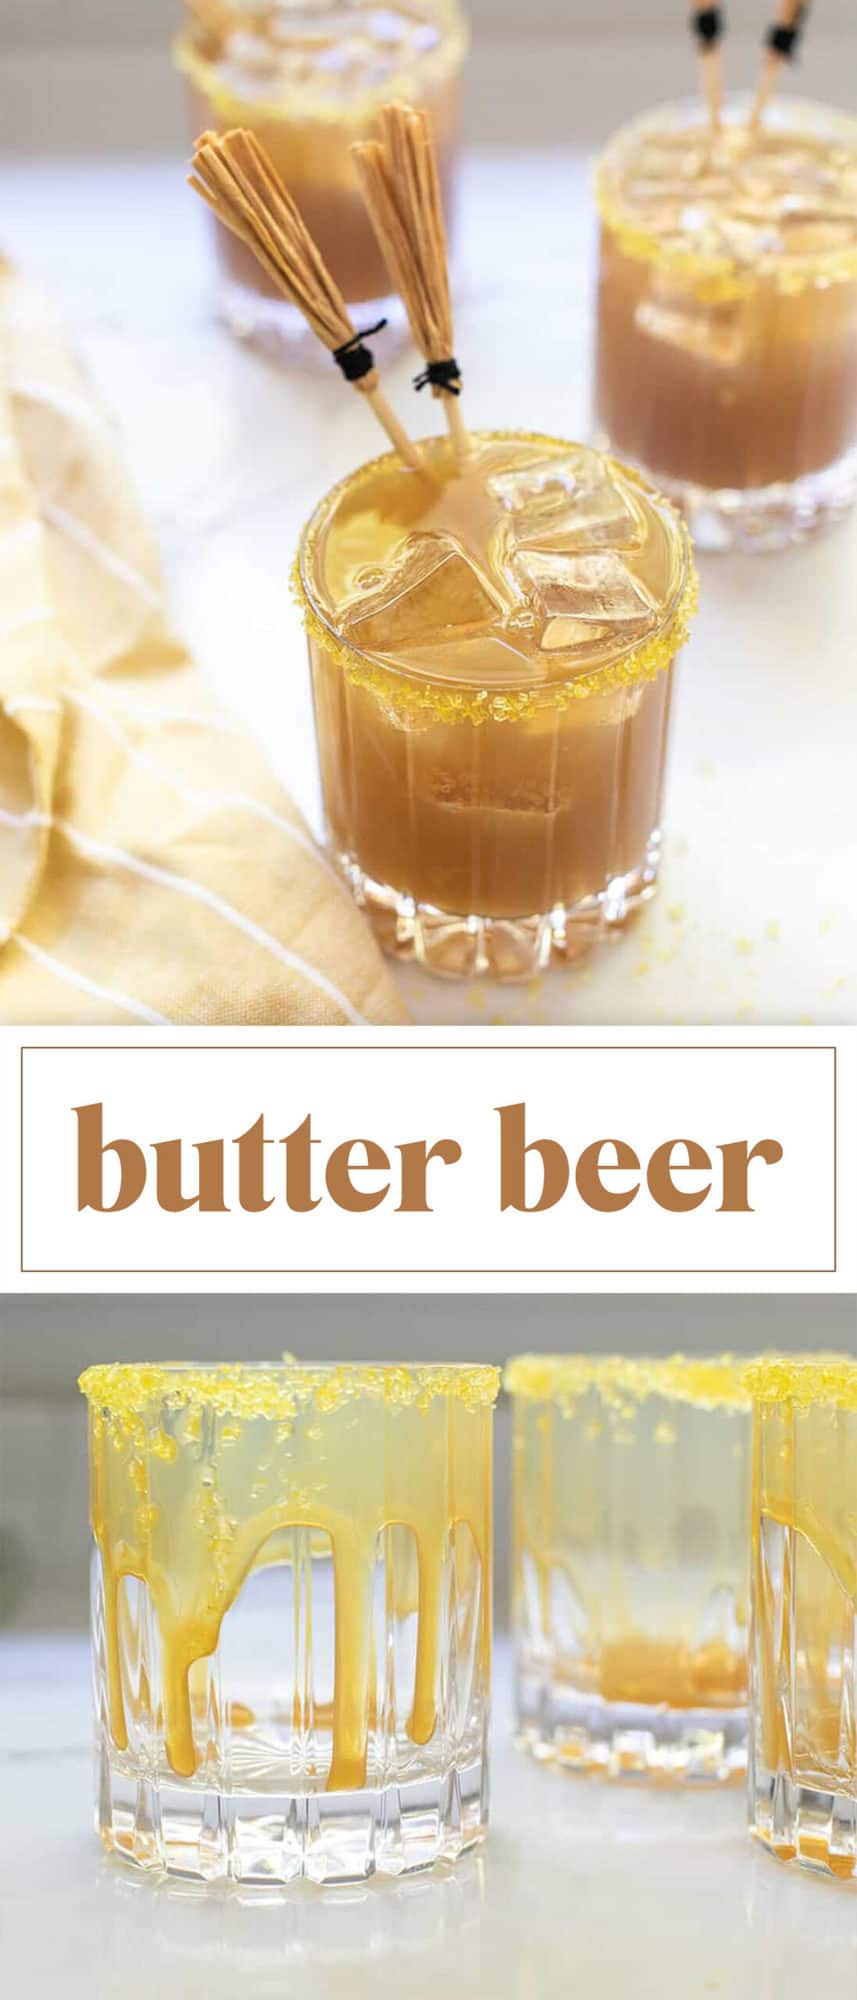 butterbeer recipe